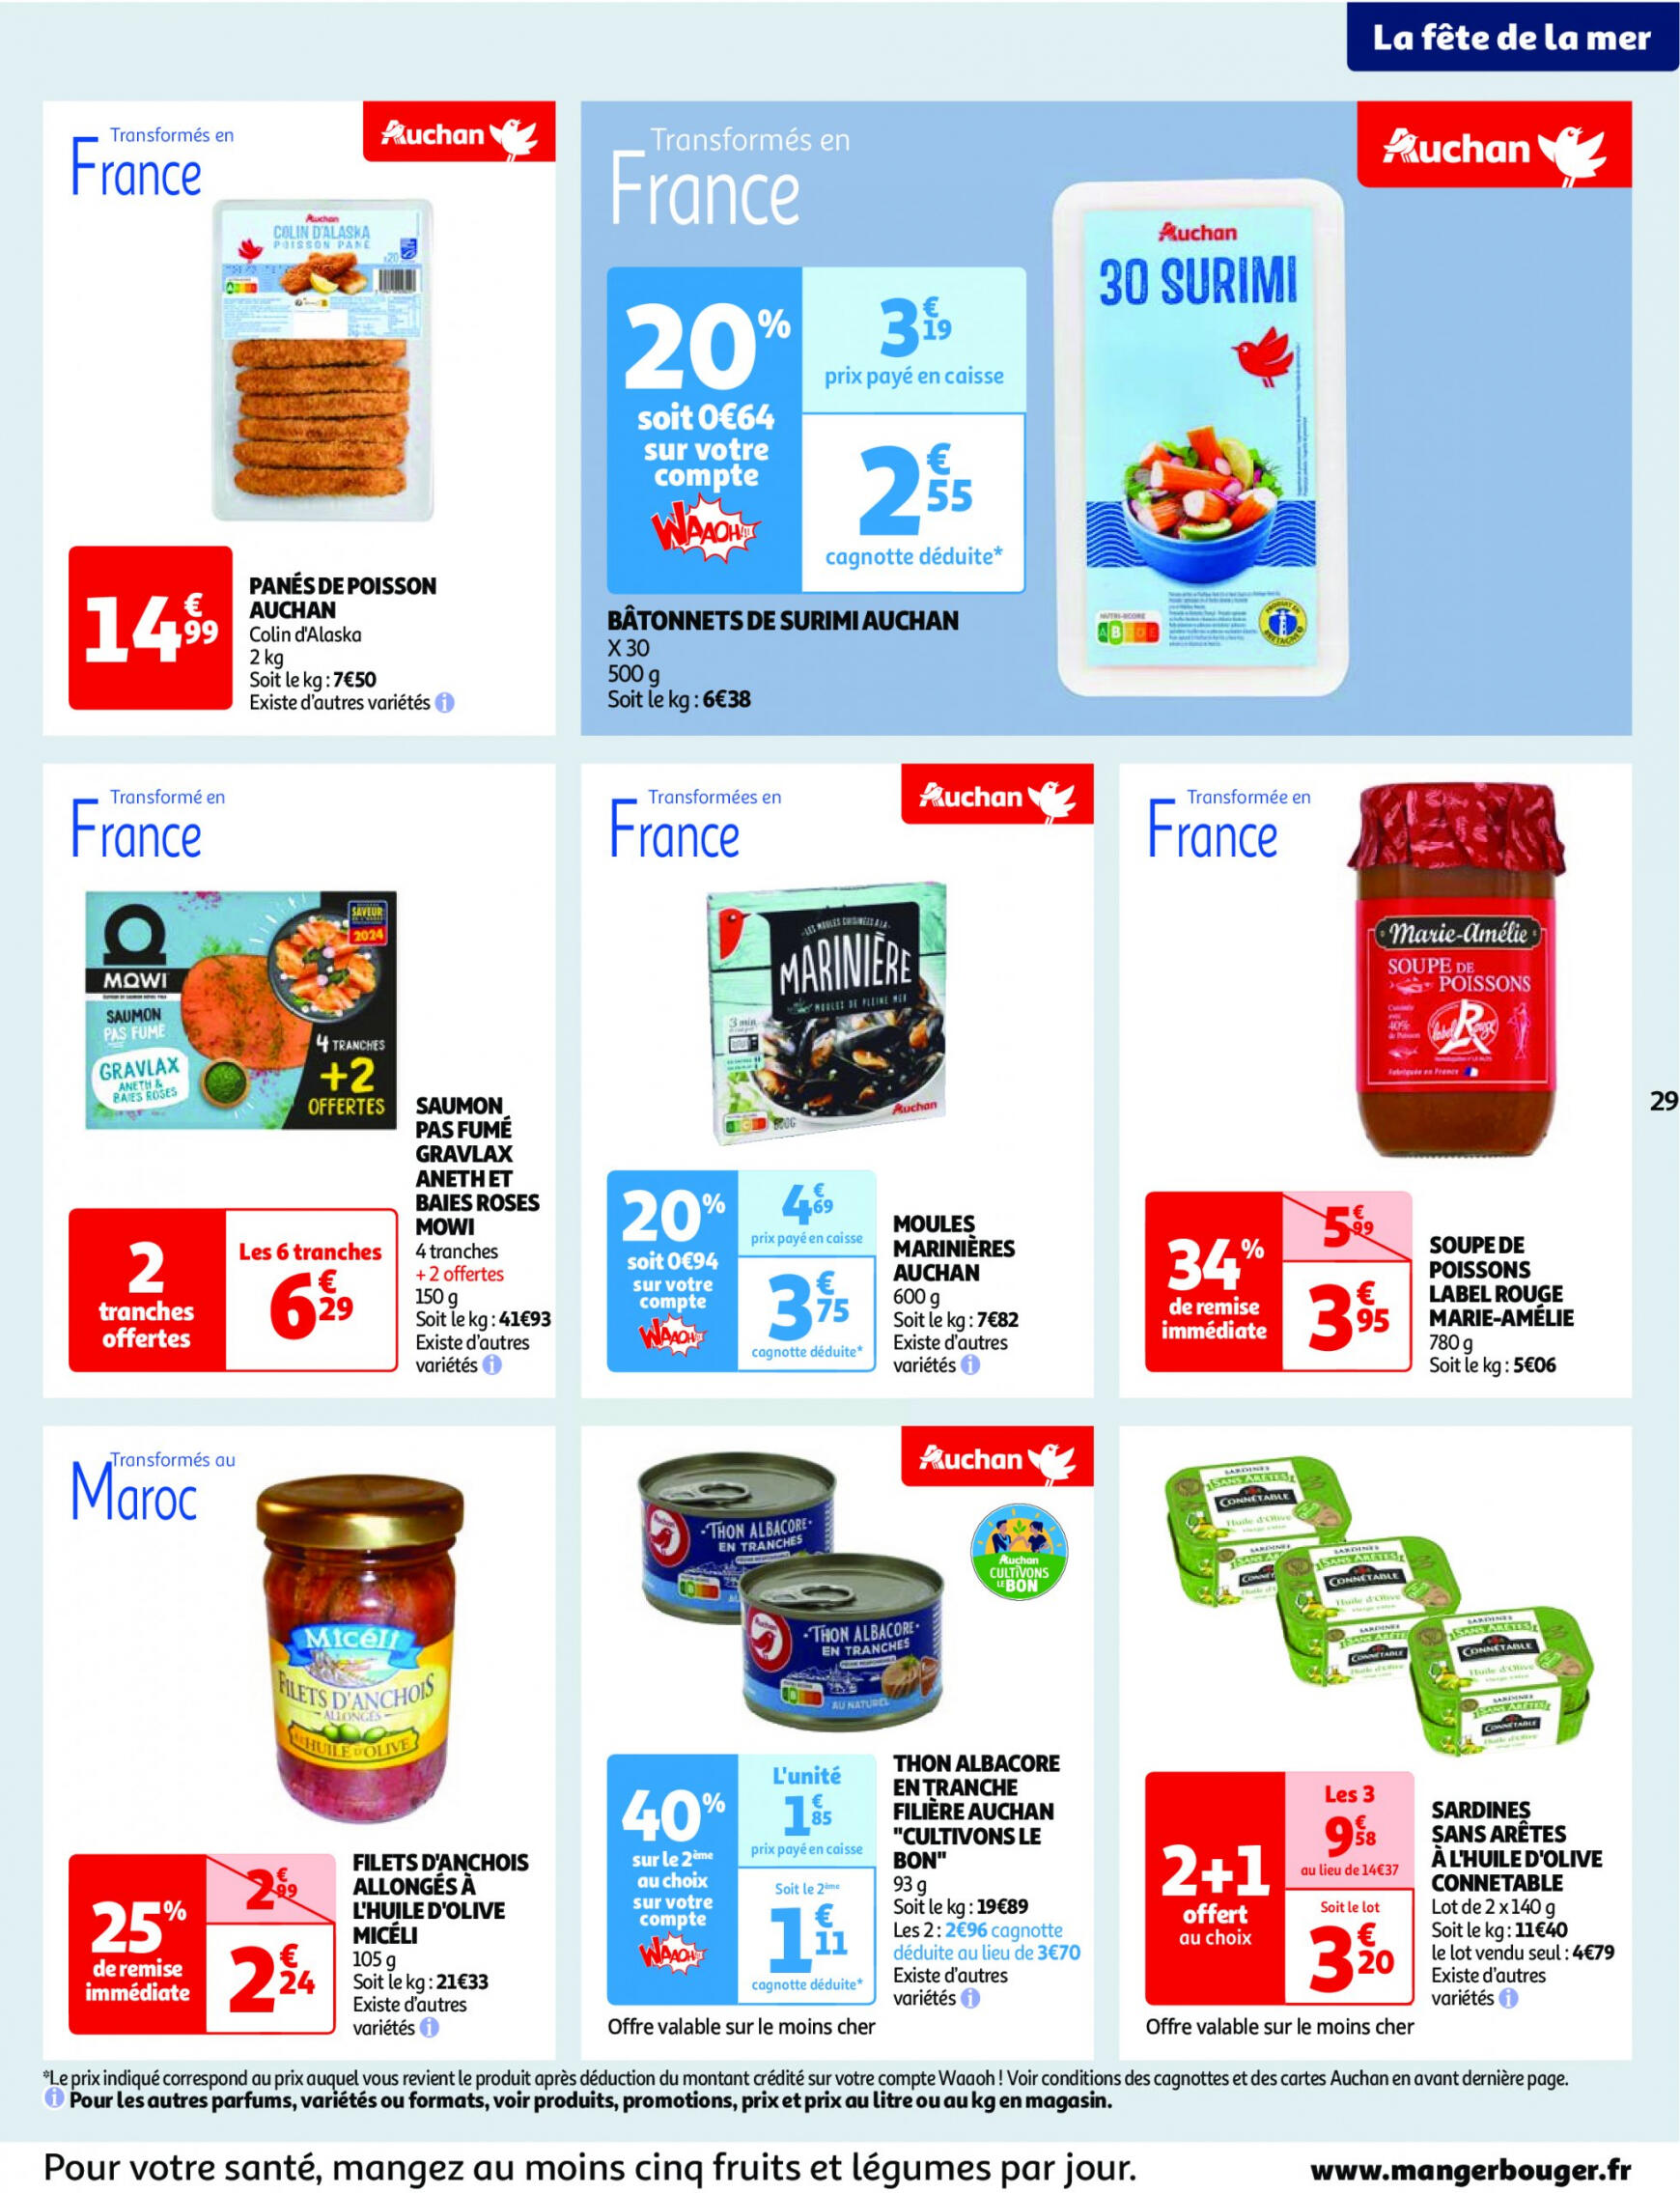 auchan - Auchan - Nos surgelés ont tout bon folder huidig 14.05. - 21.05. - page: 29